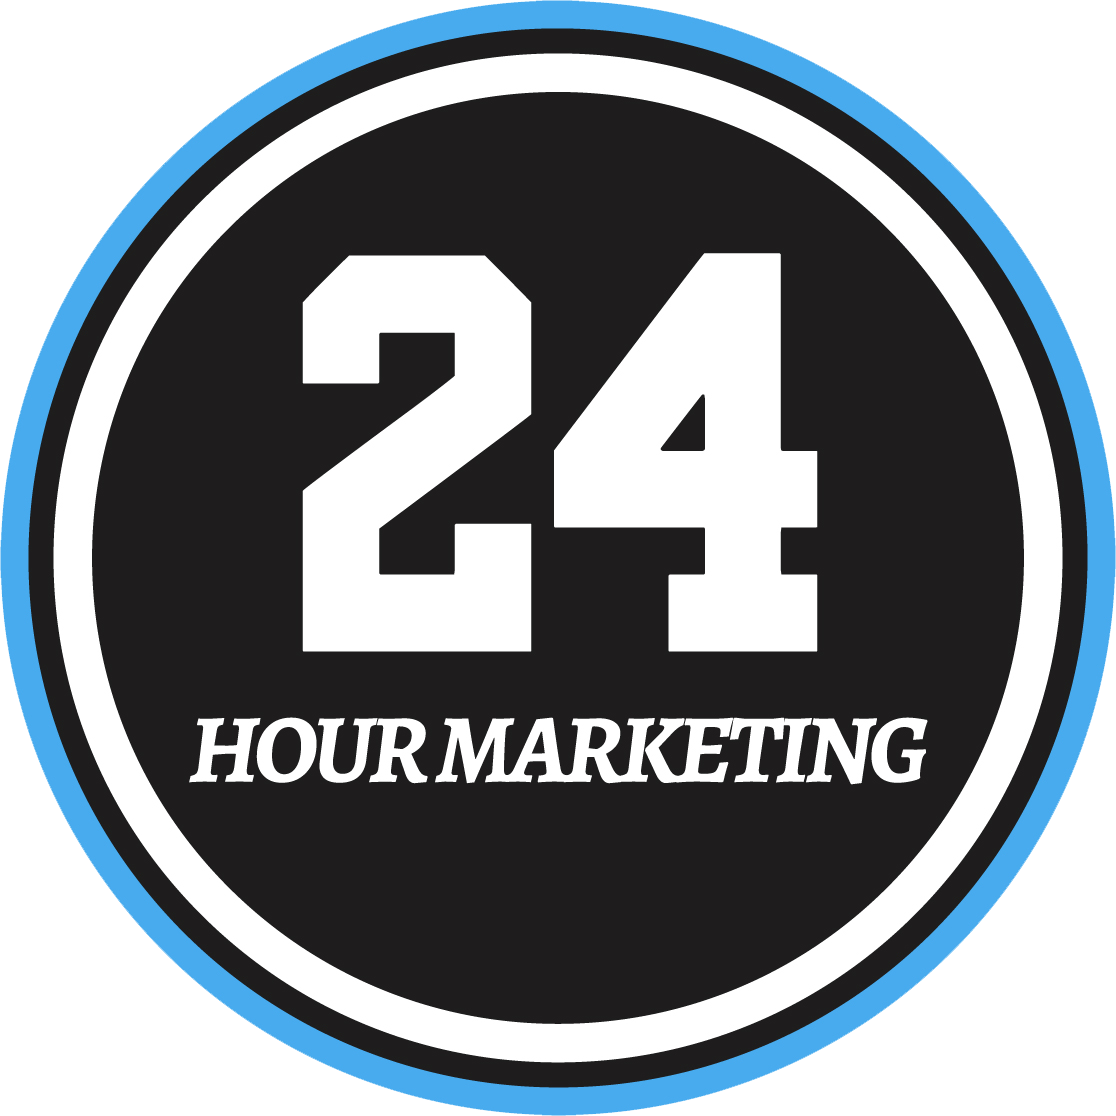 24 Hour Marketing